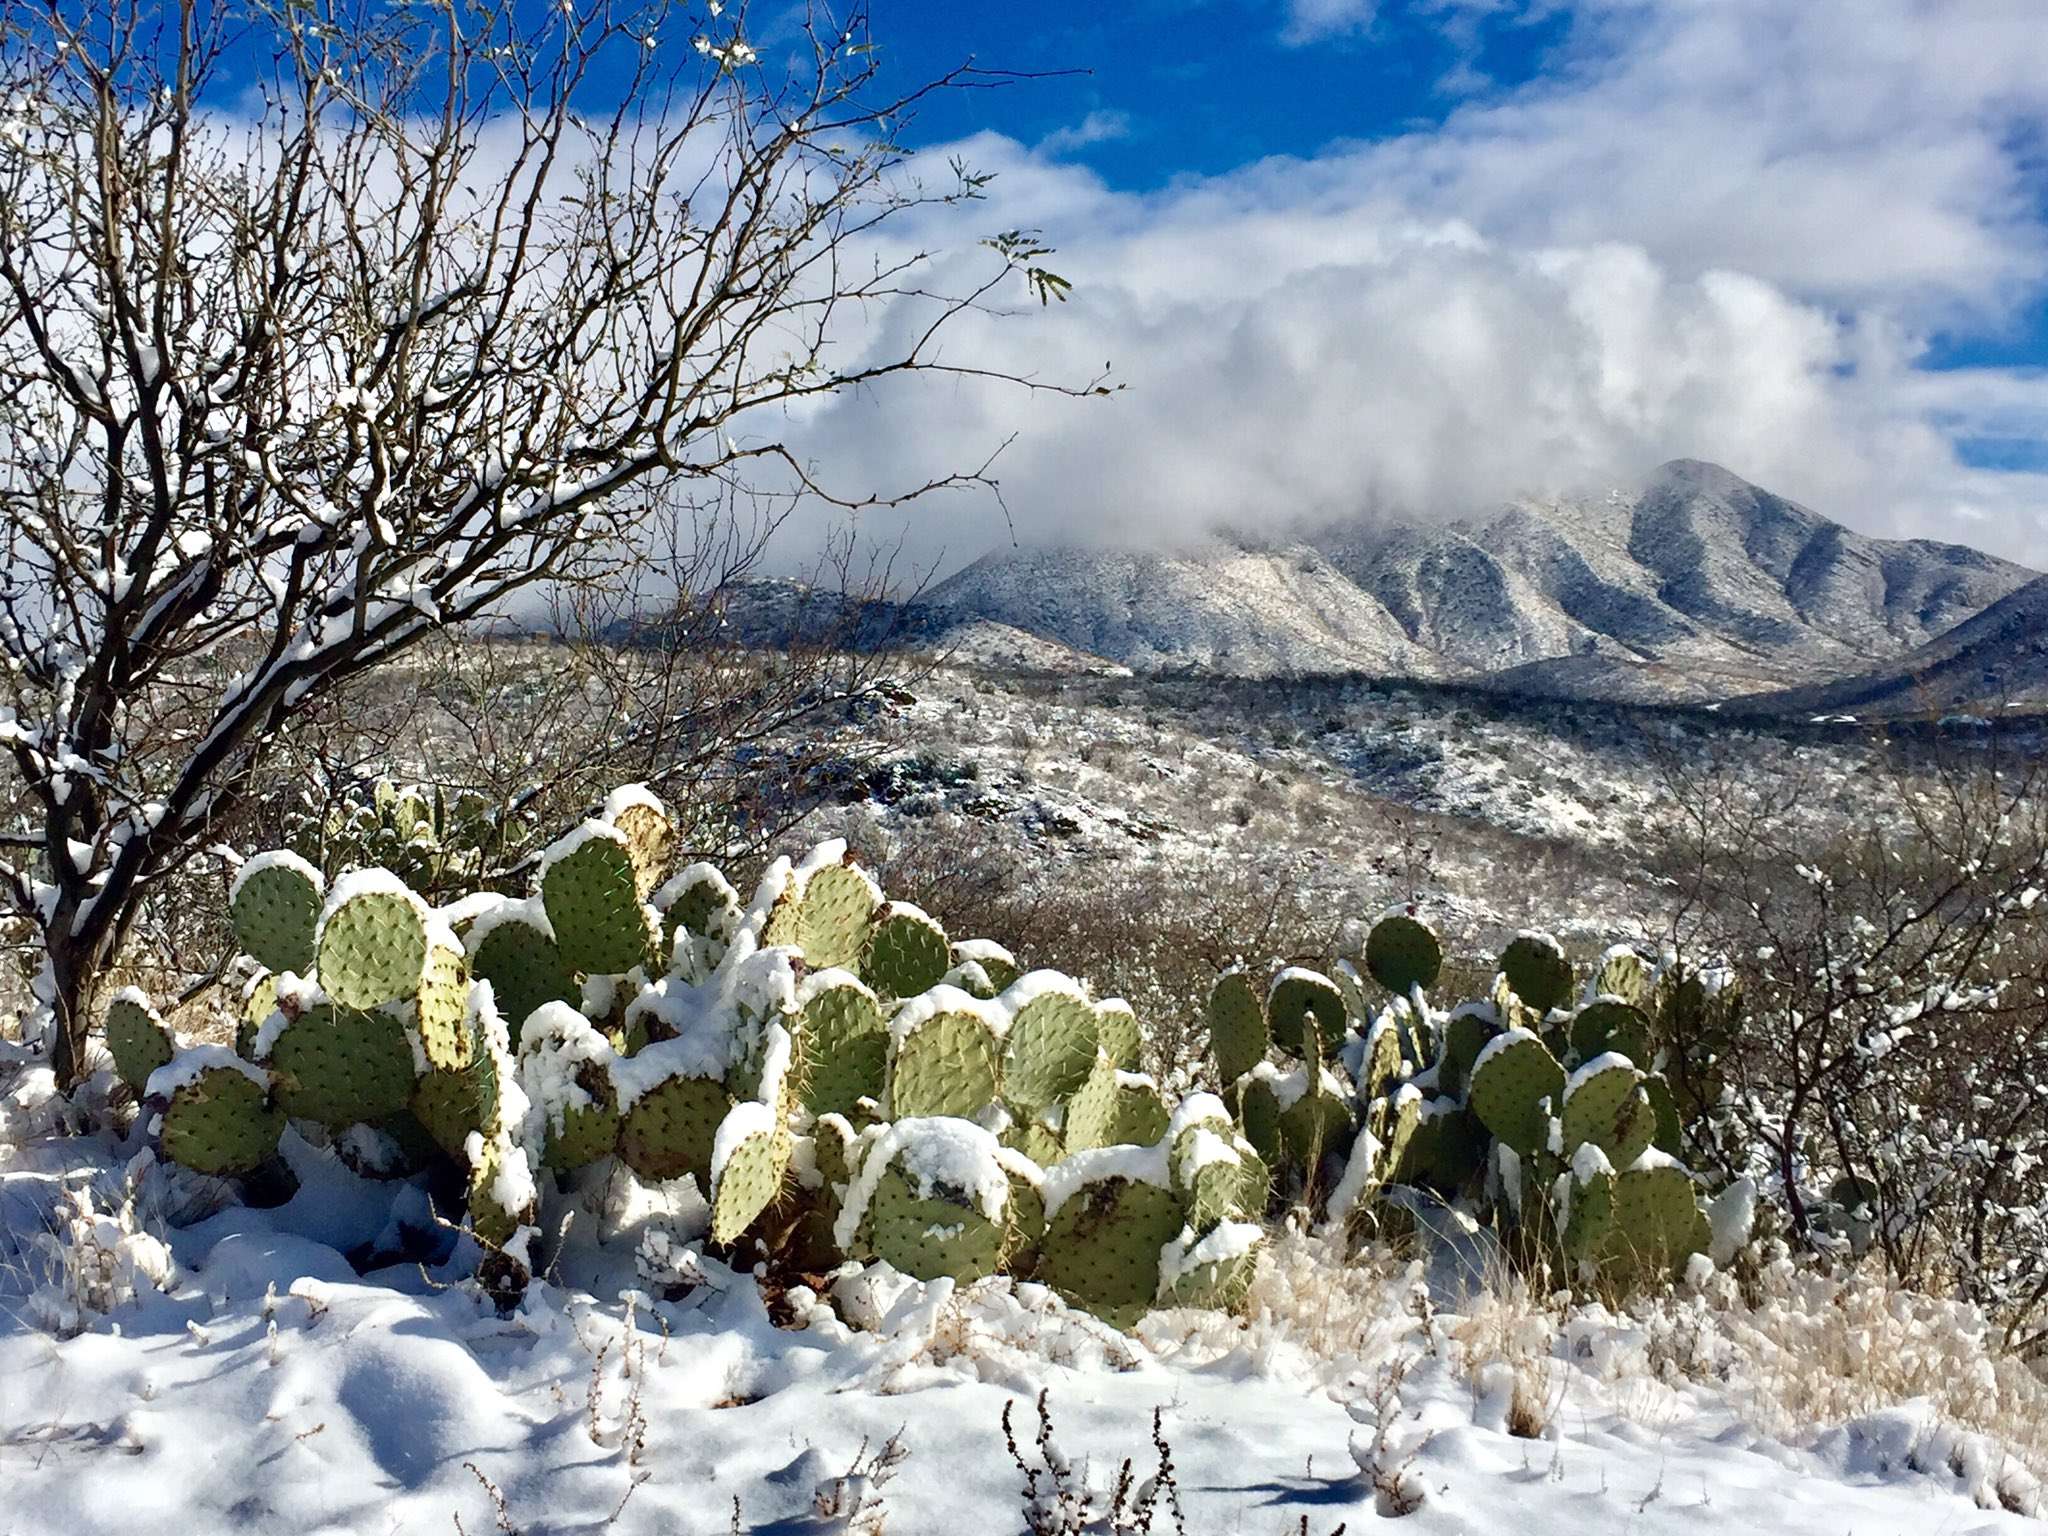 В спекотній Аризоні випав сніг: засніжені кактуси - дуже дивне видовище - фото 418496